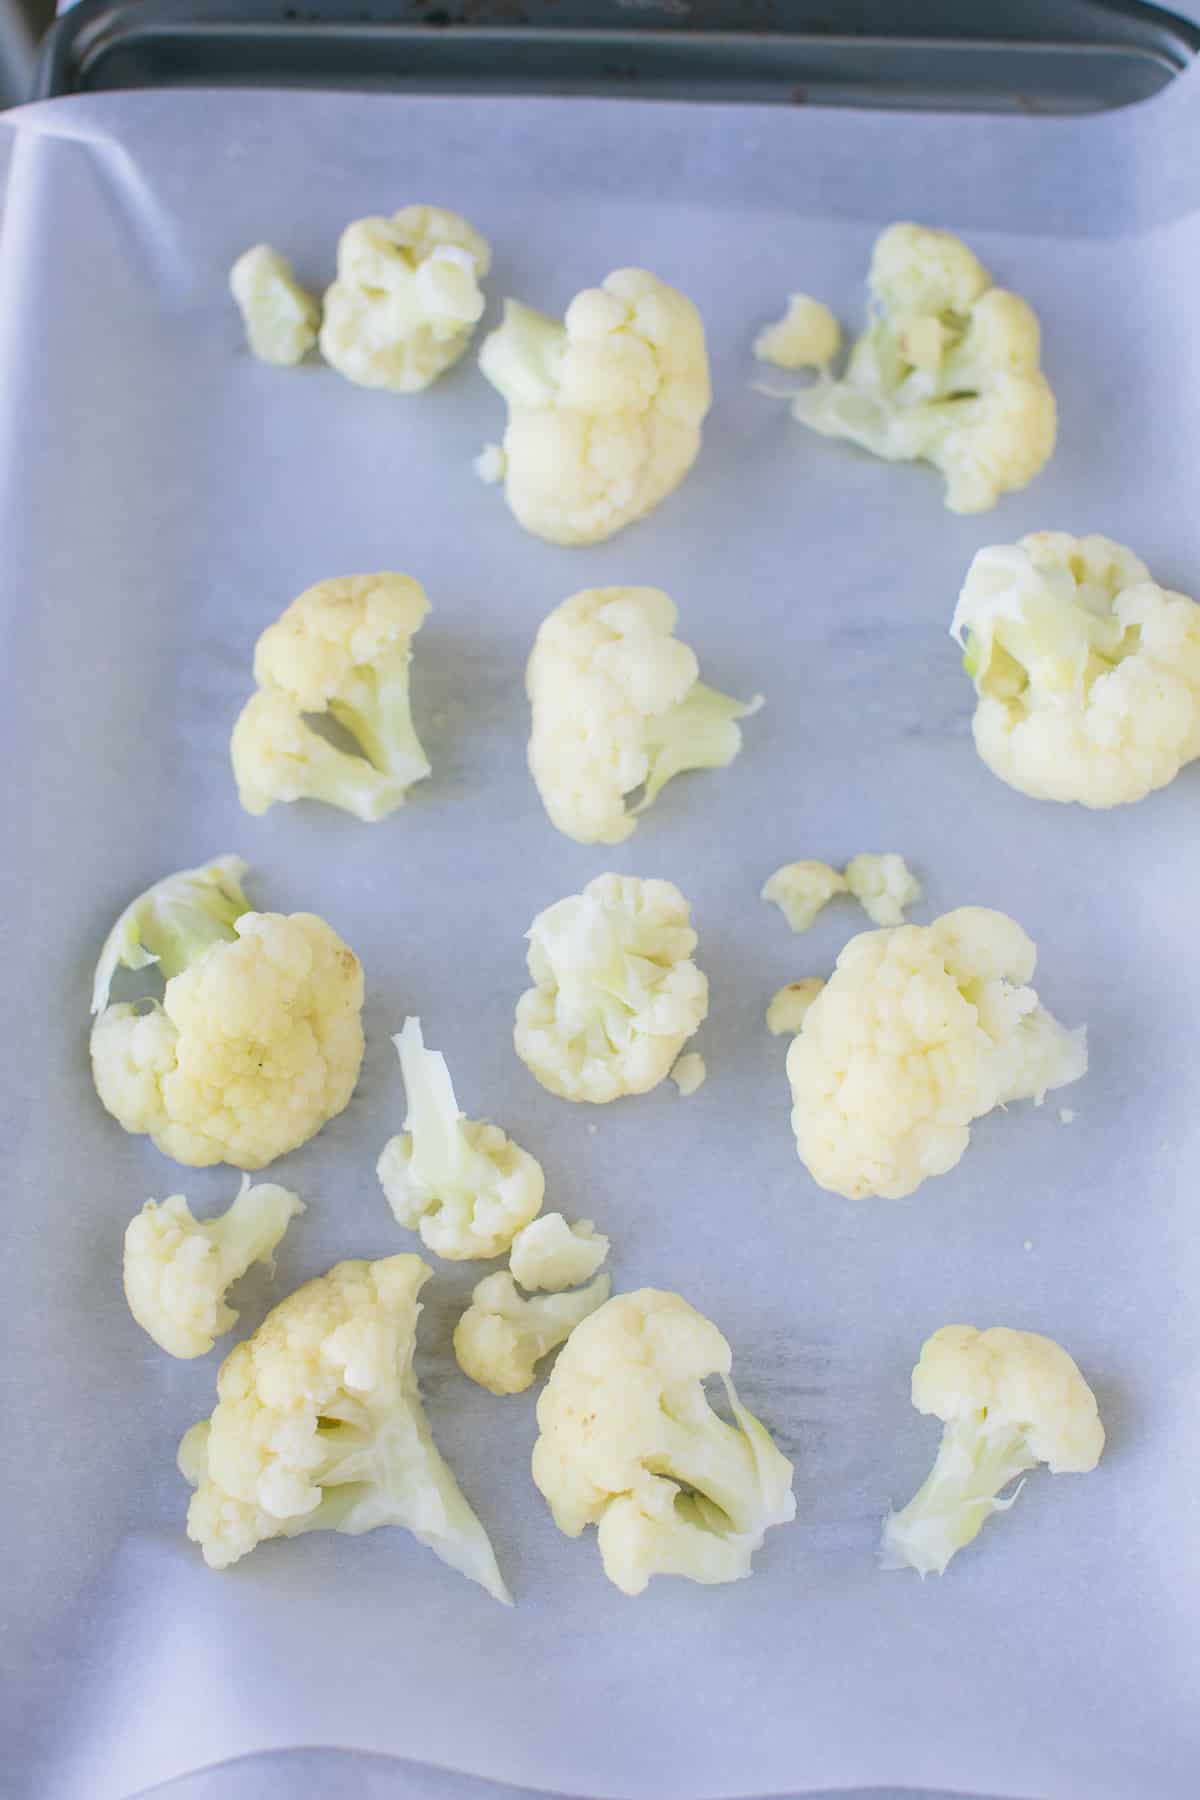 cauliflower florets on a baking sheet